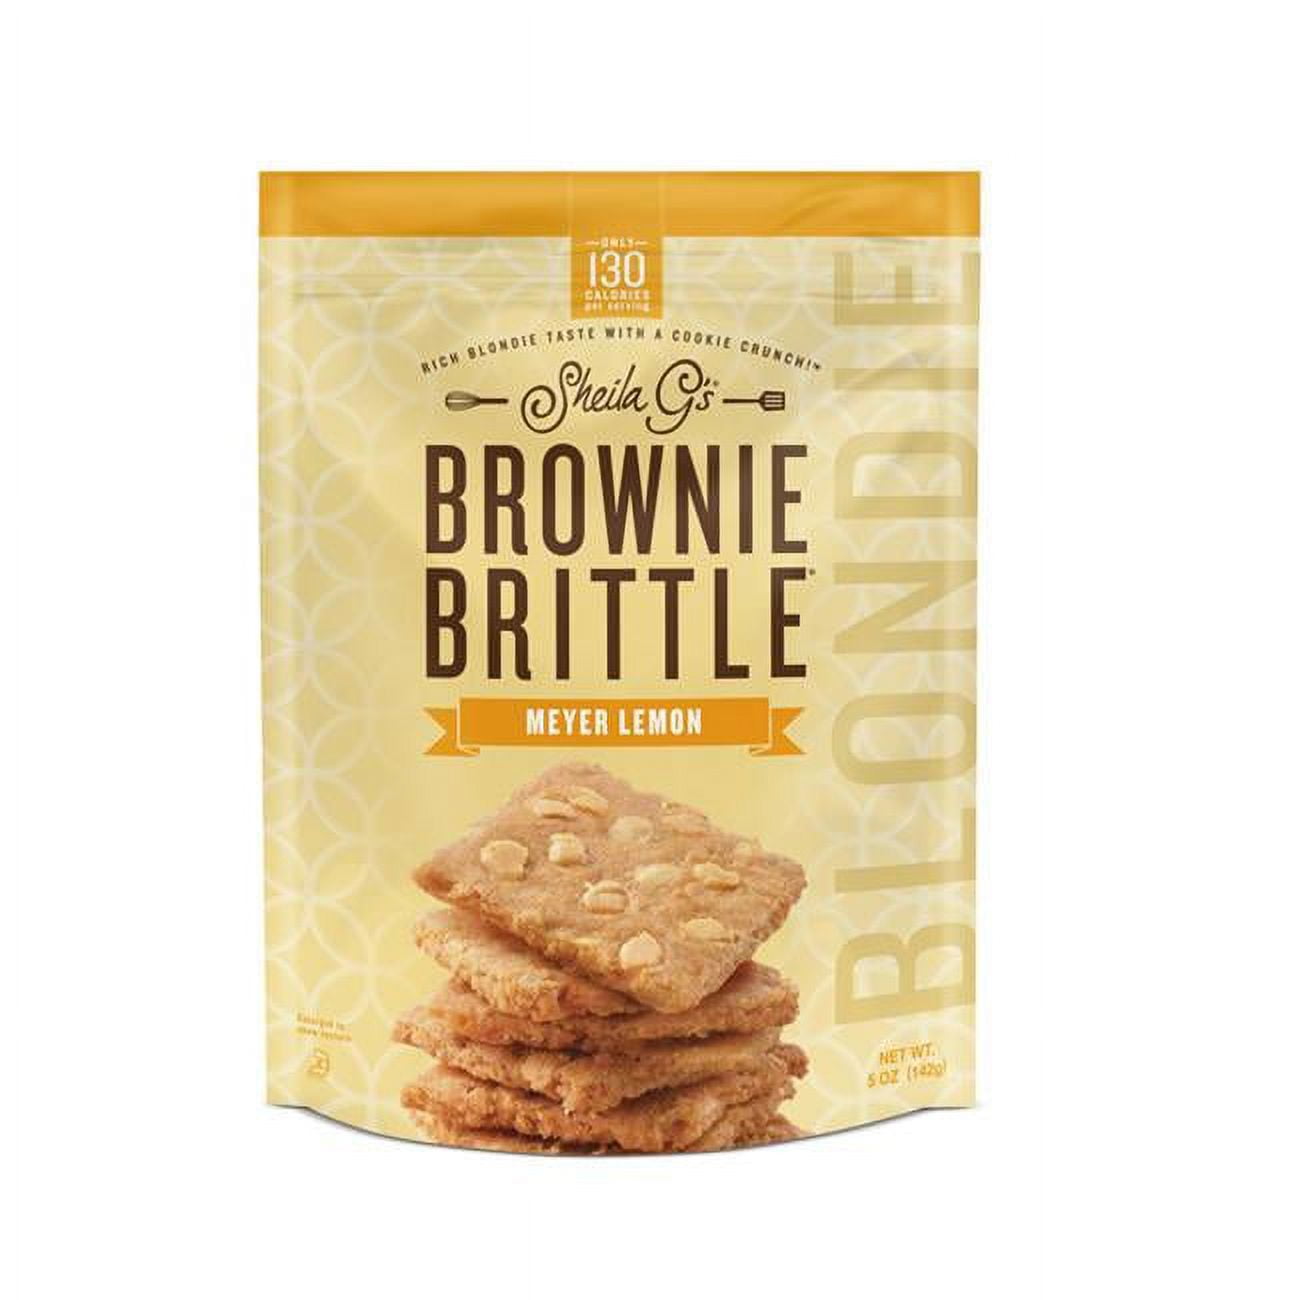 Picture of Brownie Brittle 9019657 5 oz Blondie Meyer Lemon - Pack of 12